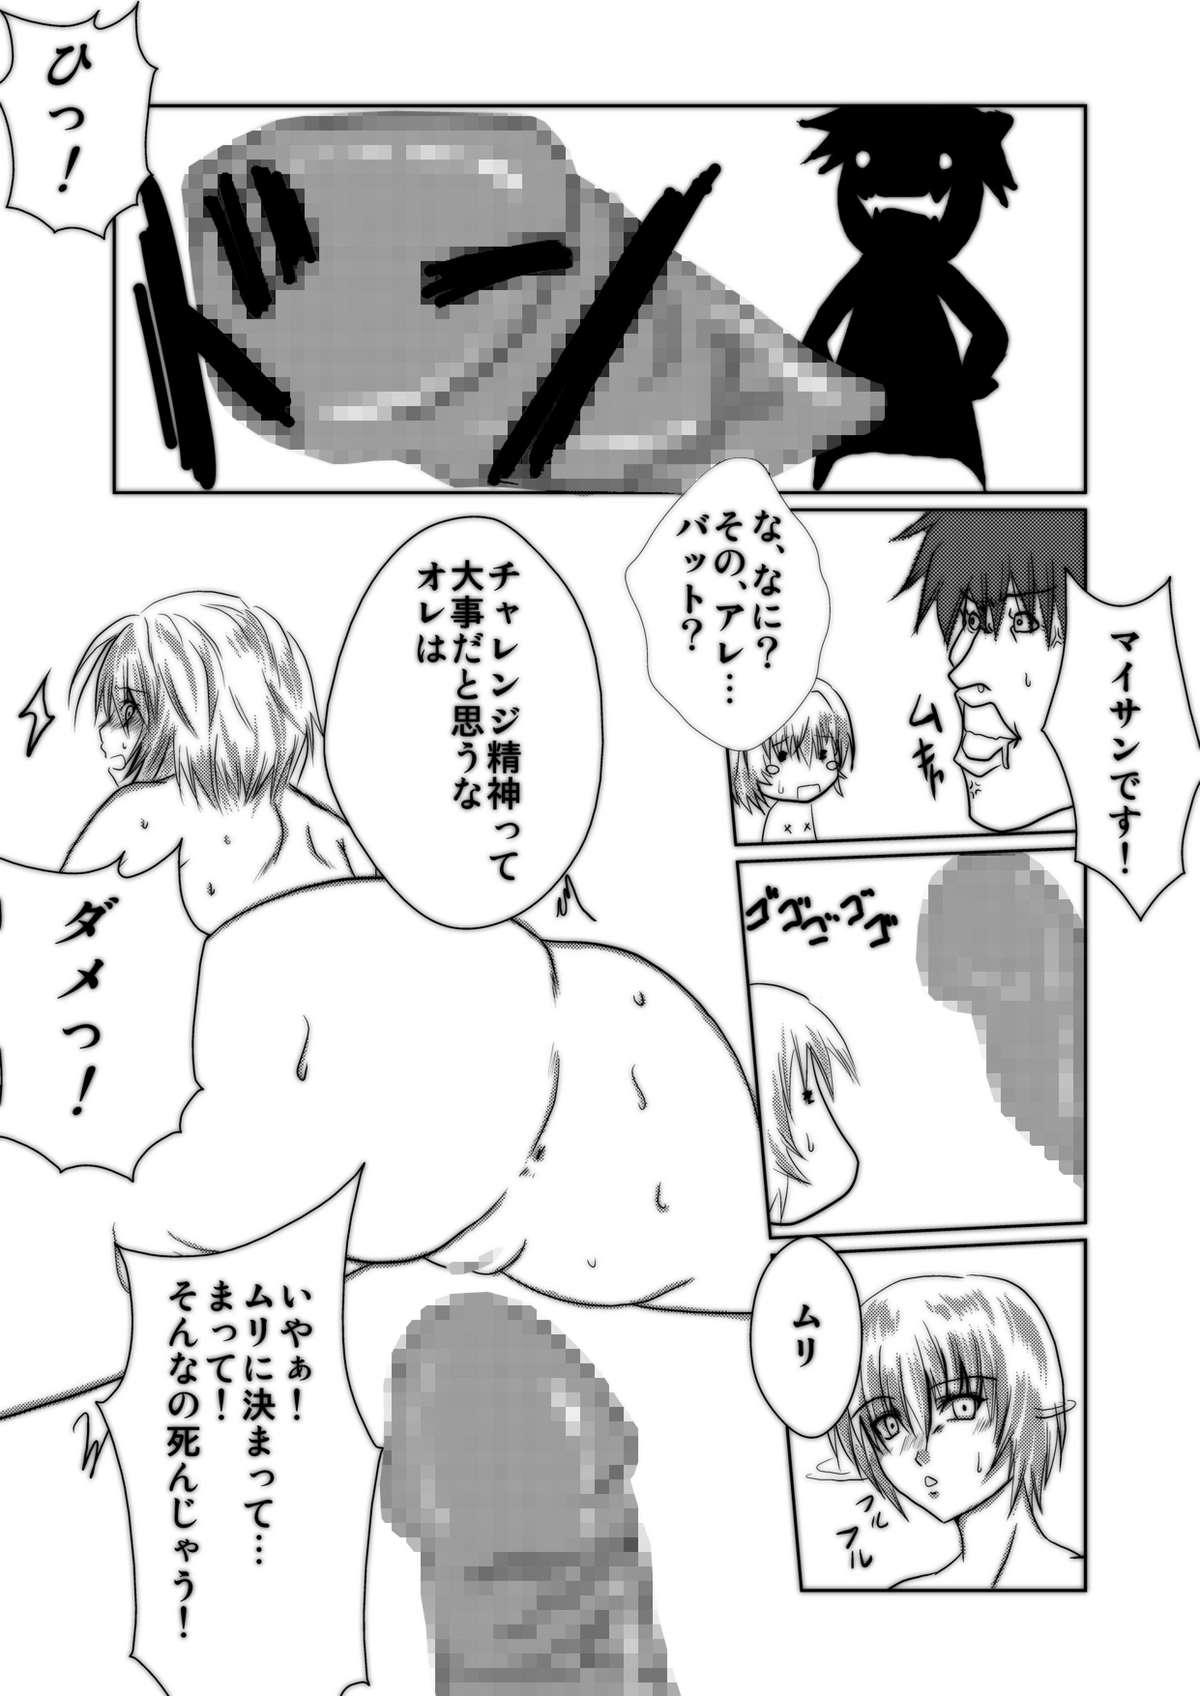 Orgasms Bakunyuna Ayanami-san to no sei katsu! | Sexual activity with Rei's breasts! - Neon genesis evangelion Caseiro - Page 8